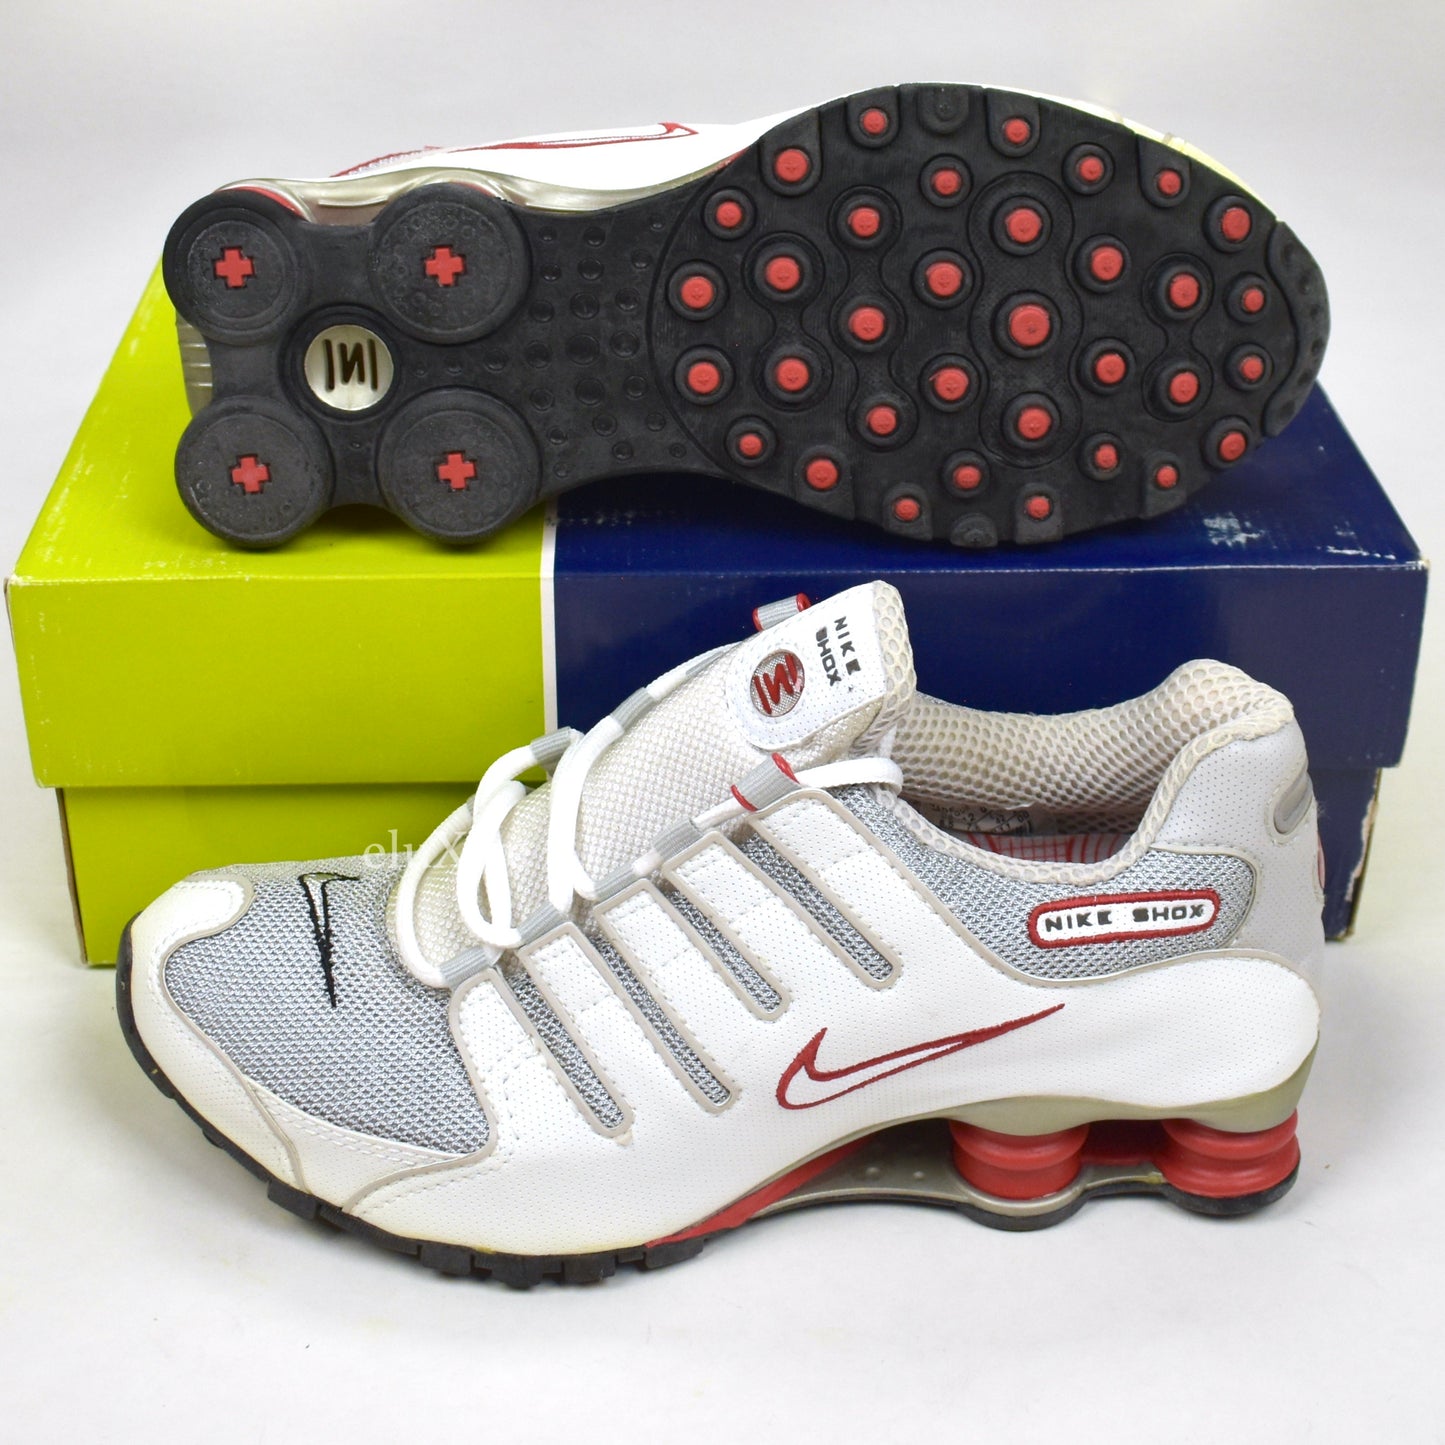 Nike - Shox NZ OG Gray / White / Sport Red (2003)